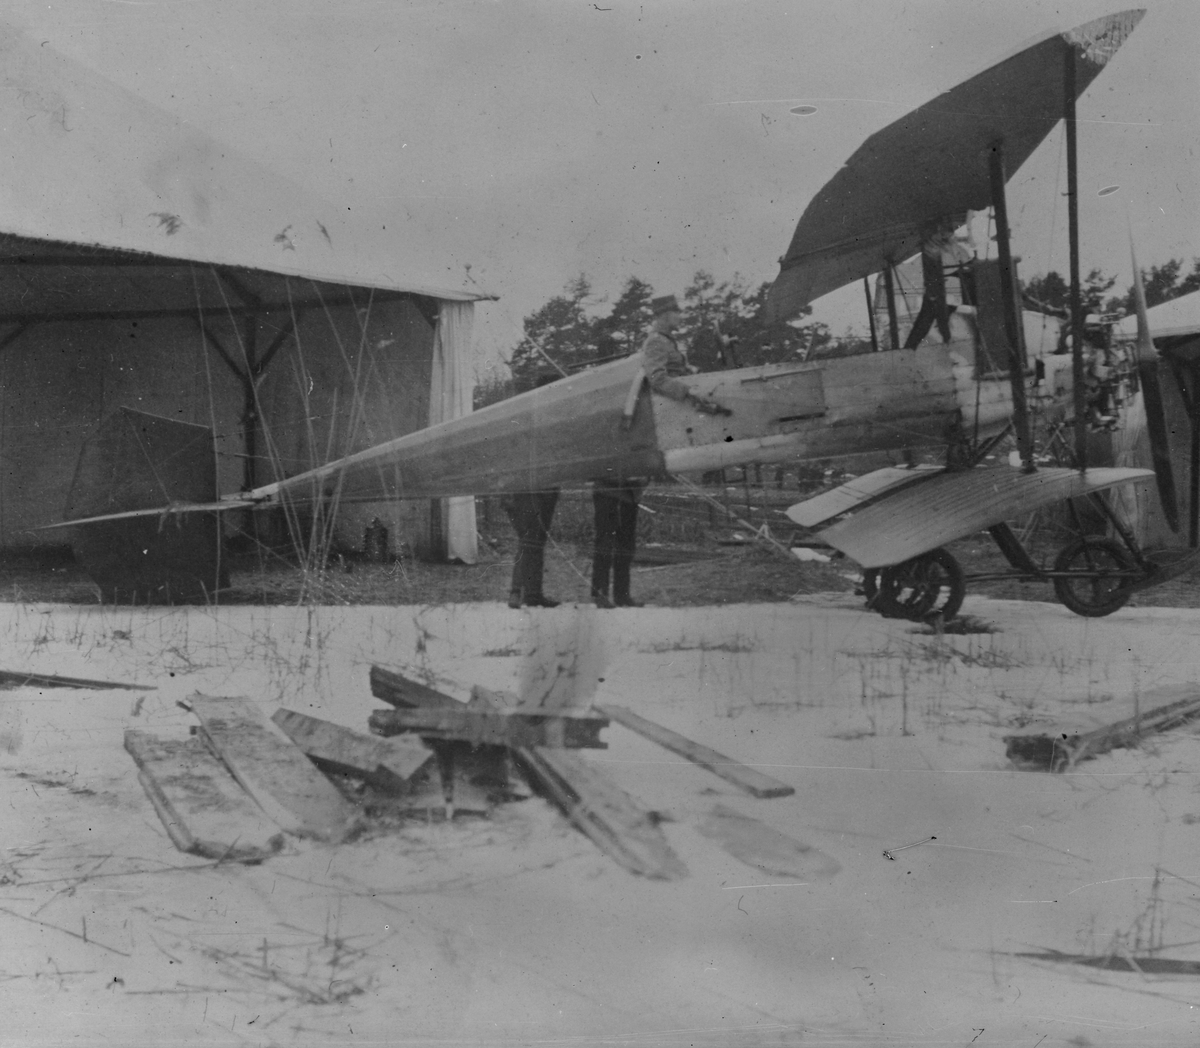 Flygplan B 1 Bréguet C.U 1 sett från sidan vid en hangar vid vinterövning på Lidingö, 1913